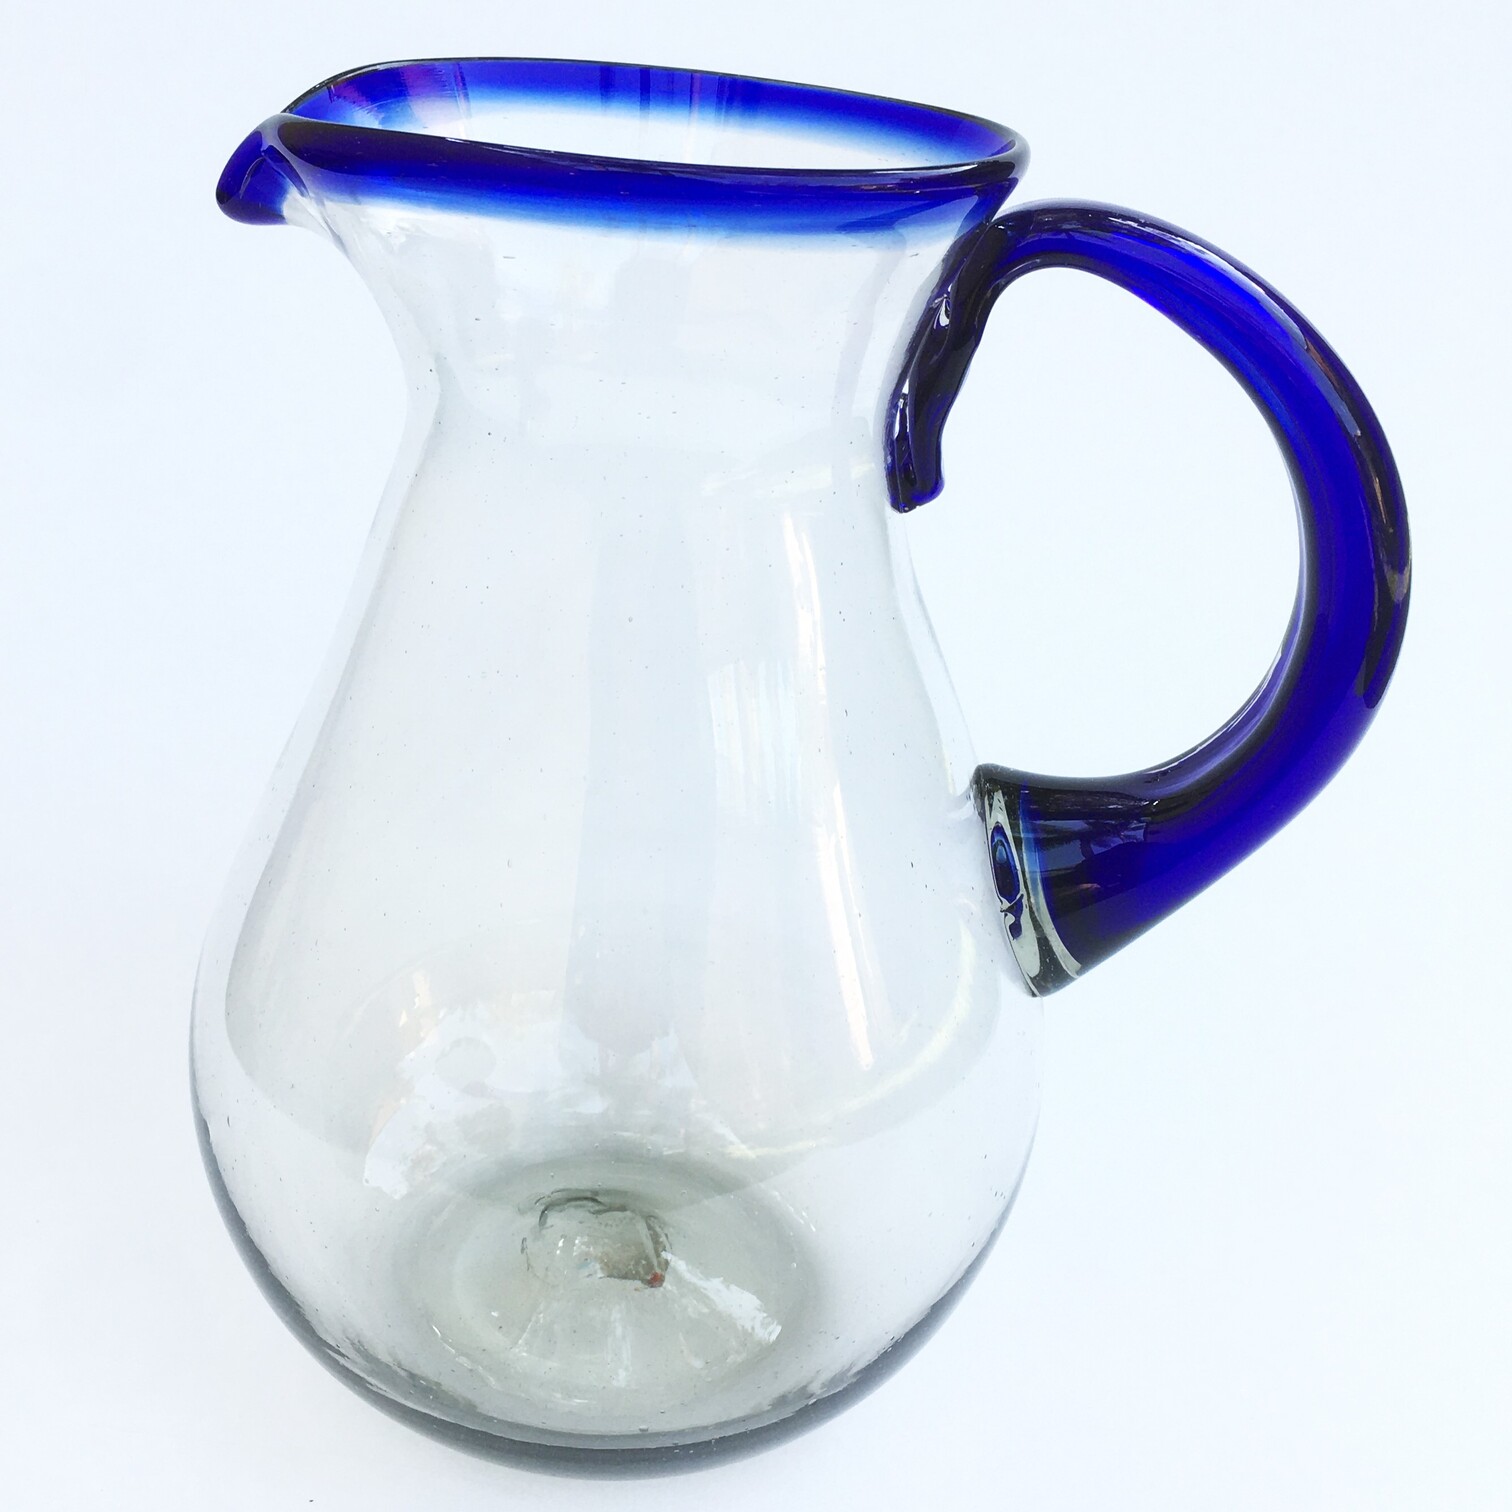 Novedades / Jarra Pera Alta con Borde Azul Cobalto / Ésta clásica jarra es perfecta para servir cualquier tipo de bebidas refrescantes.